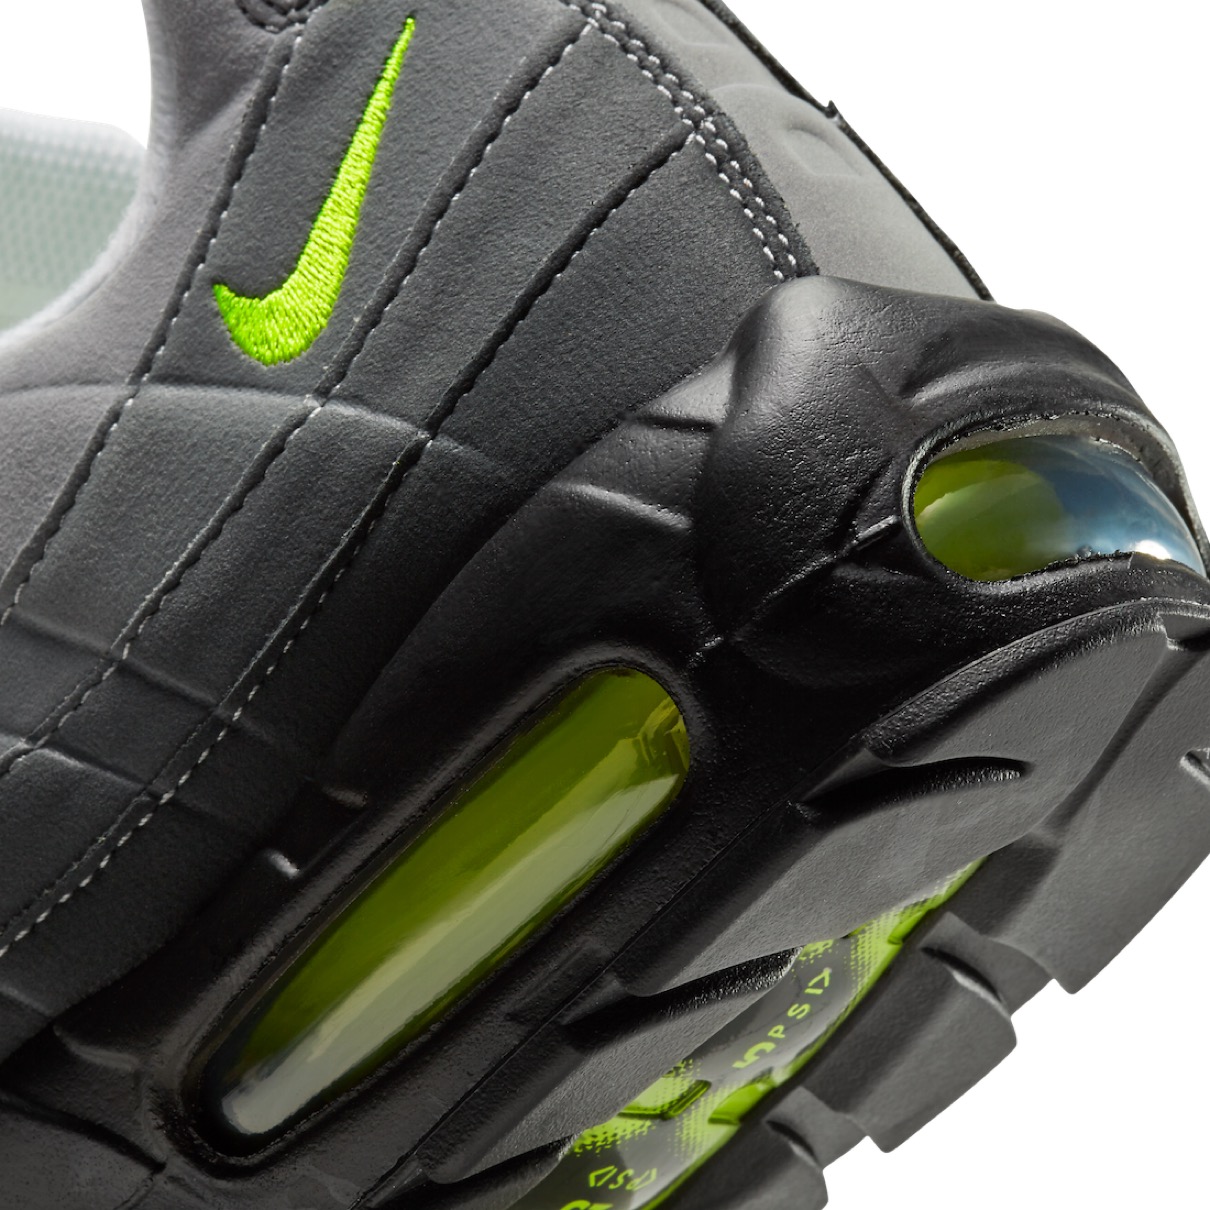 Nike】Air Max 95 OG “Neon” 通称イエローグラデが国内2020年12